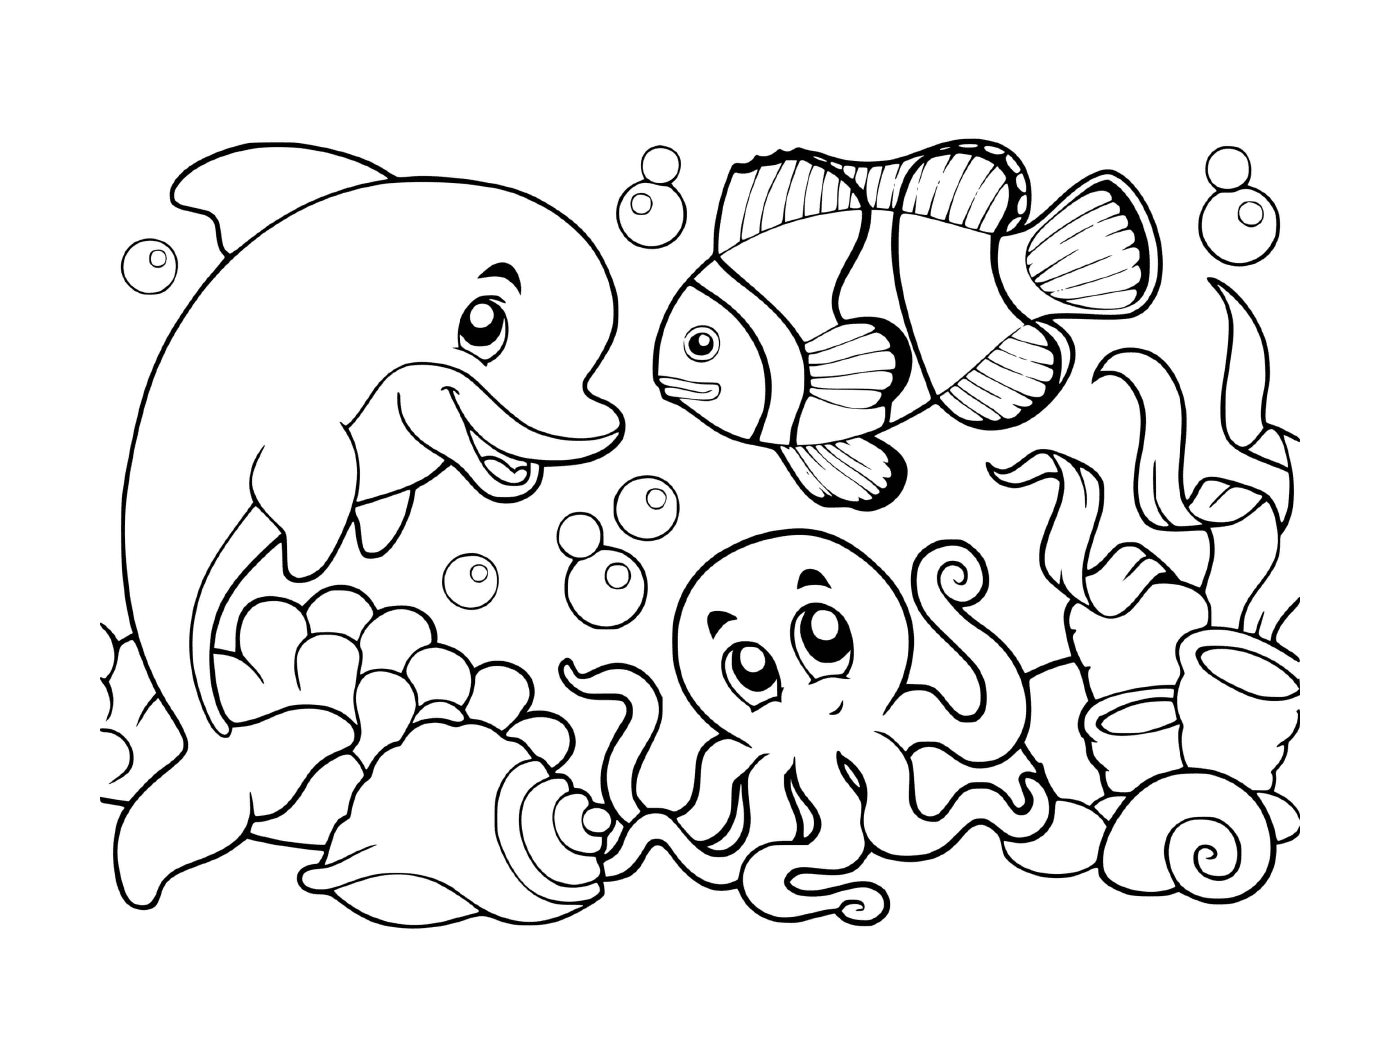  水下鱼、贝类和章鱼的场景 